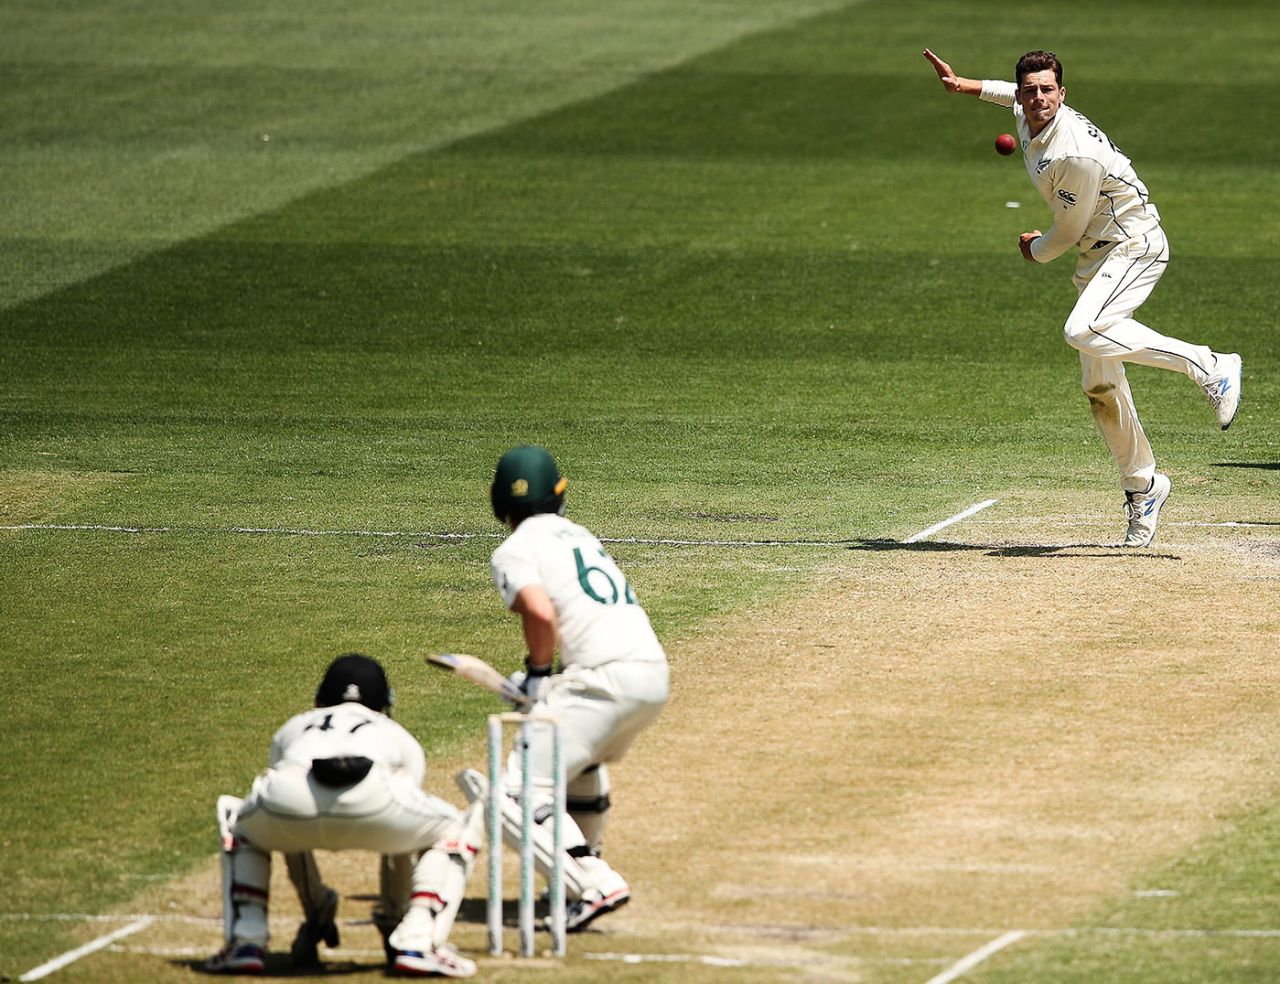 Mitchell Santner bowls, Australia v New Zealand, 2nd Test, Melbourne, 2nd day, December 27, 2019